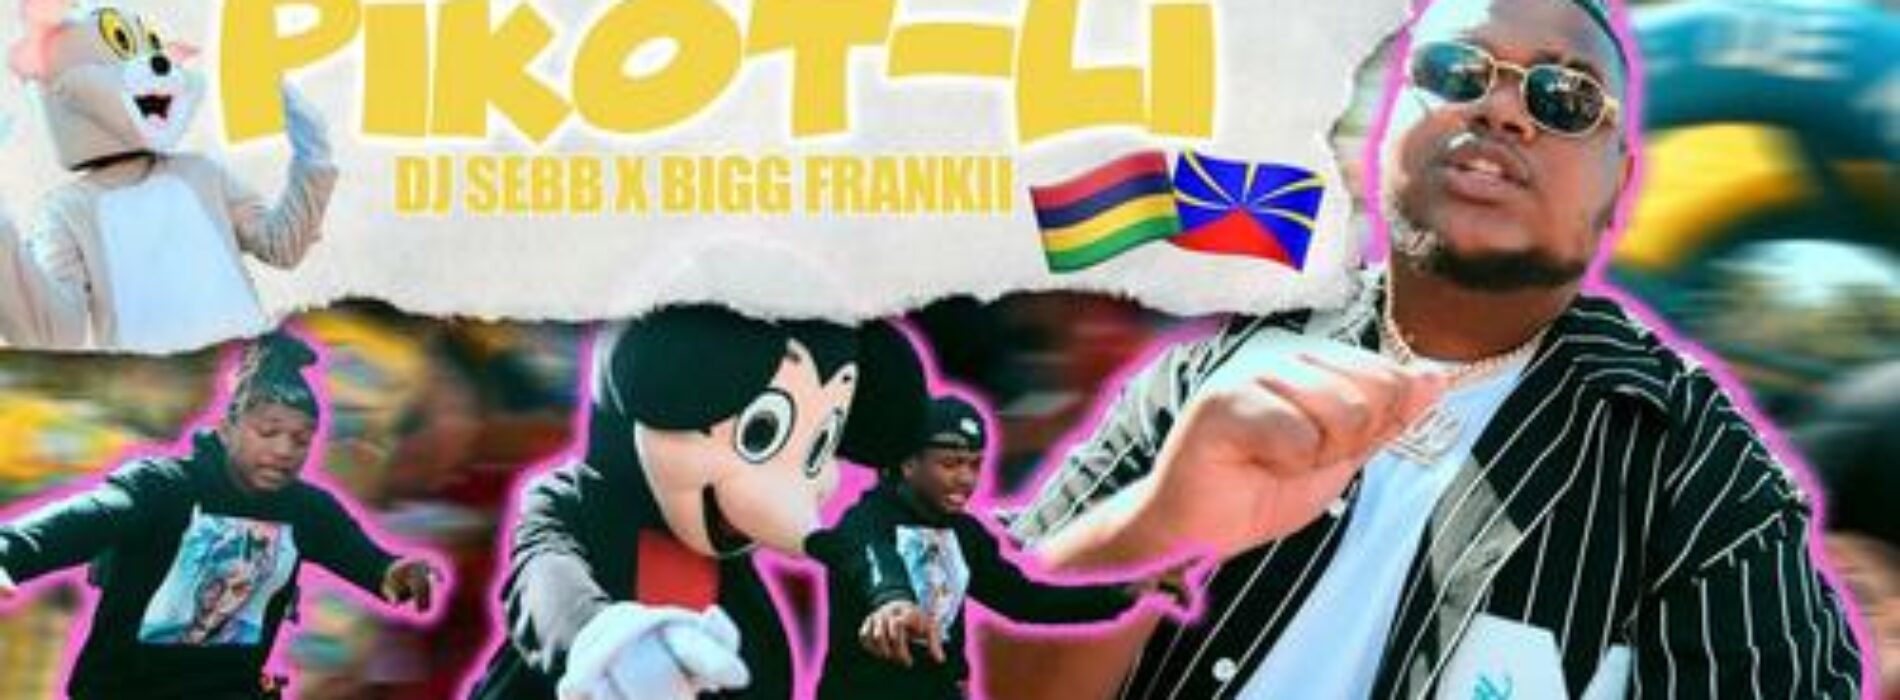 DJ SEBB feat BIGG FRANKII – « PIKOT LI « – Août 2021